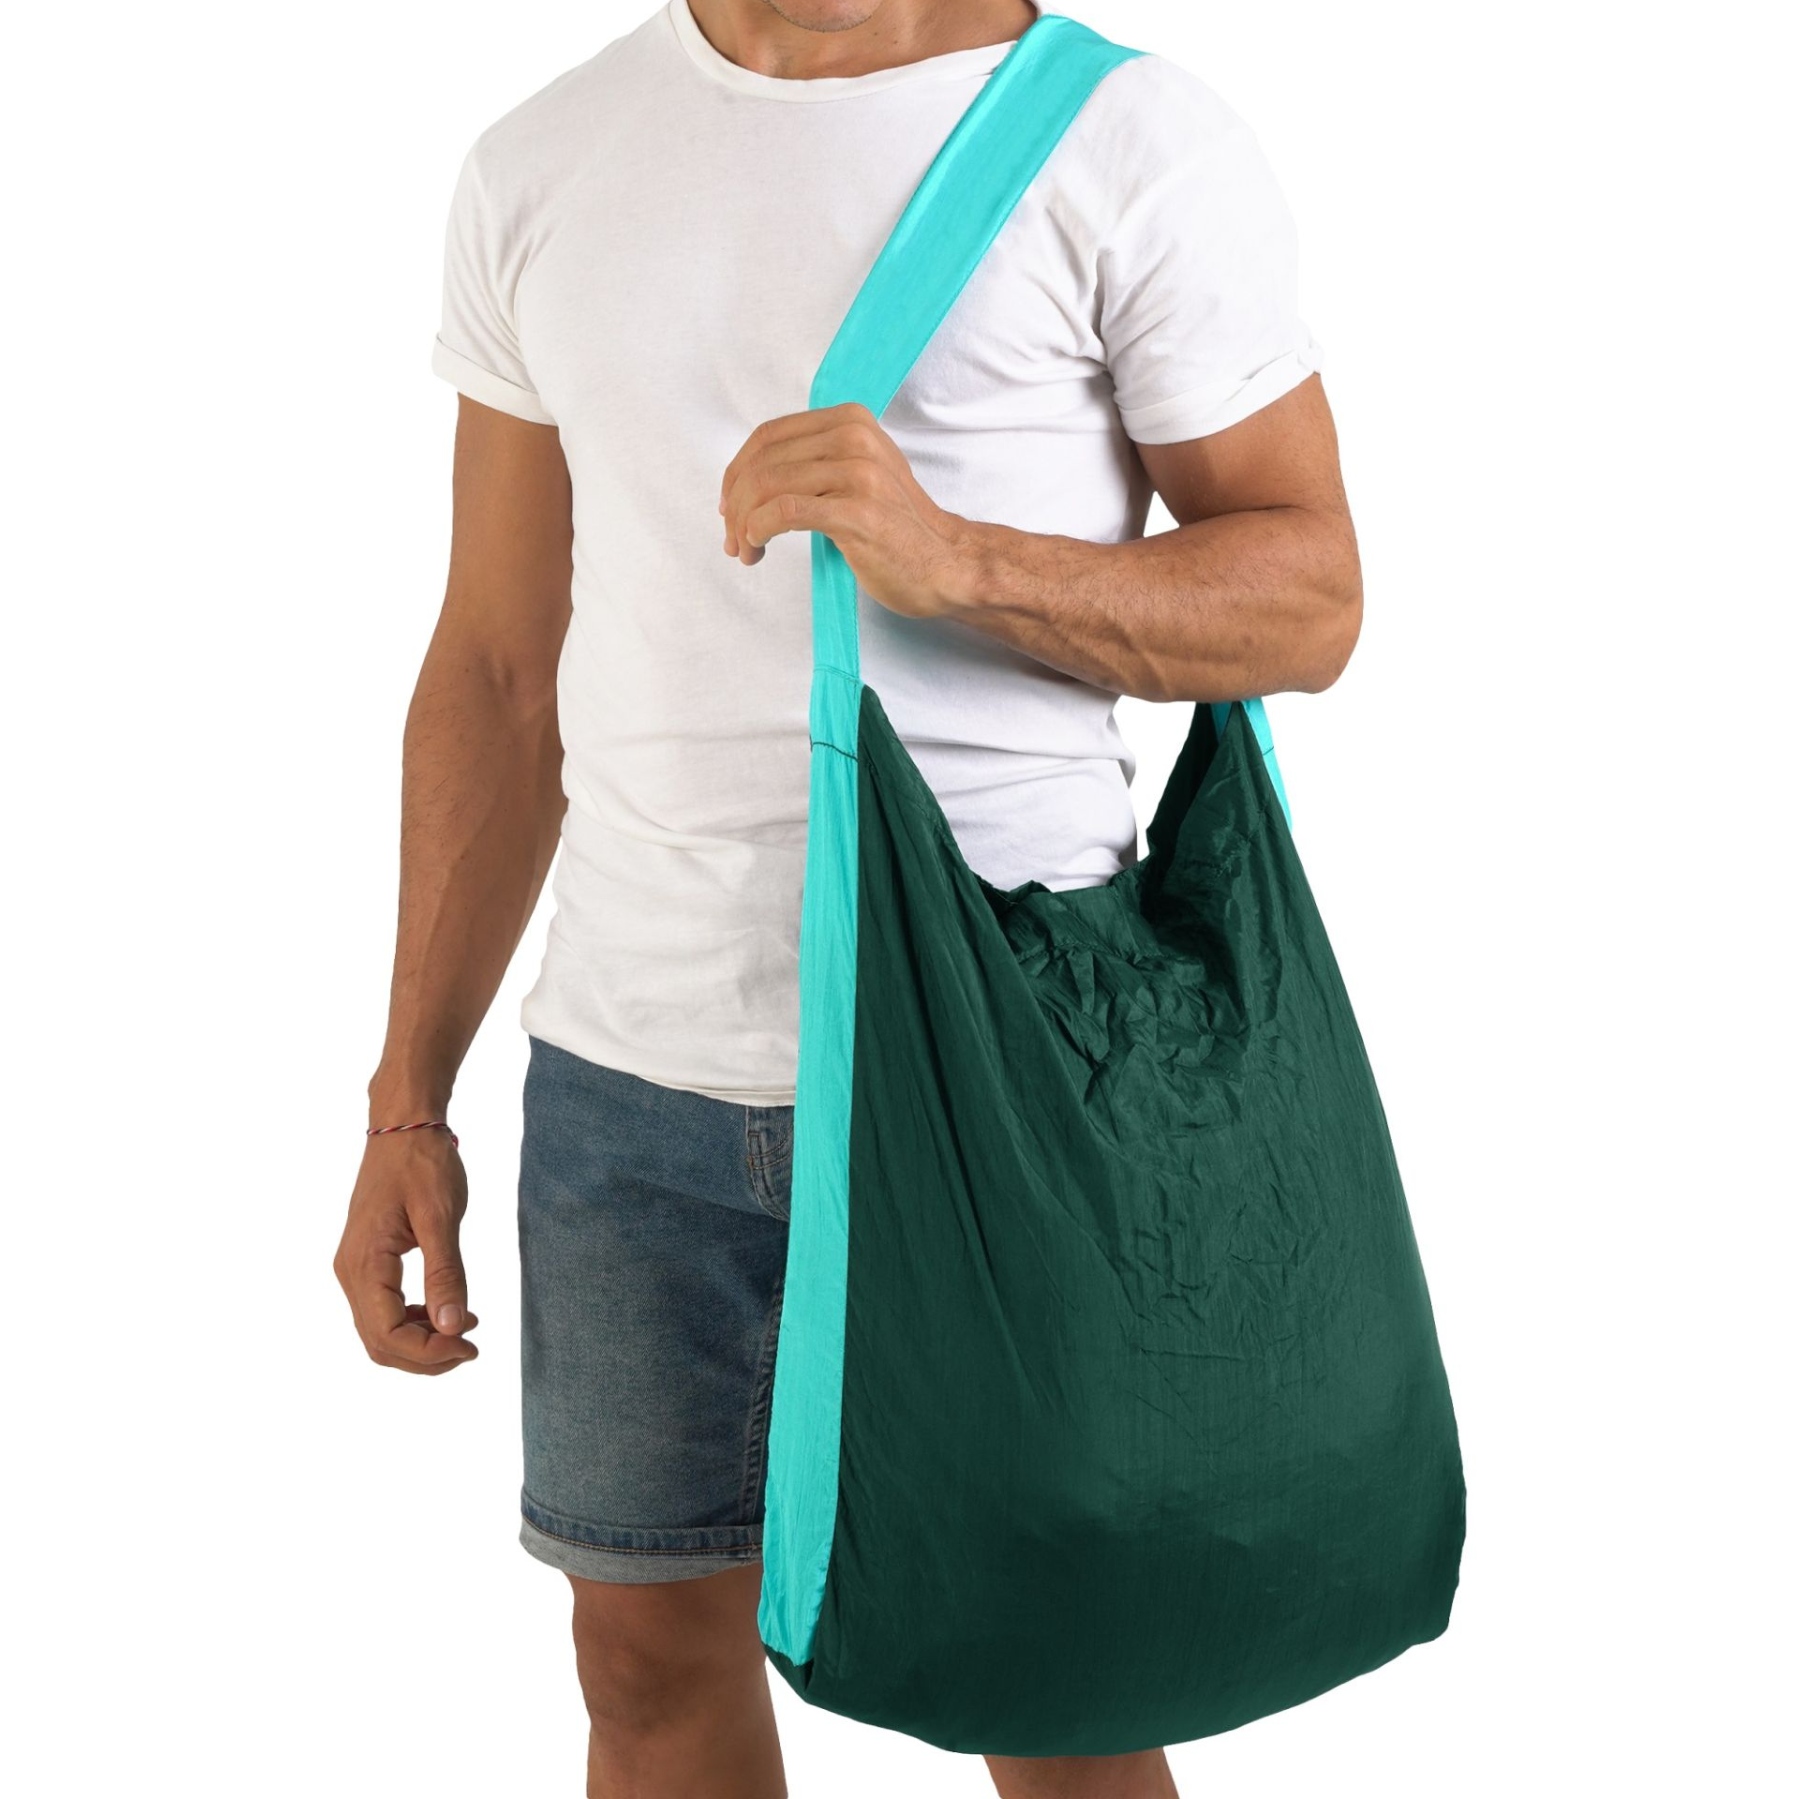 Productfoto van Ticket To The Moon Eco Bag Large - Boodschappentas - Dark Green / Turquoise